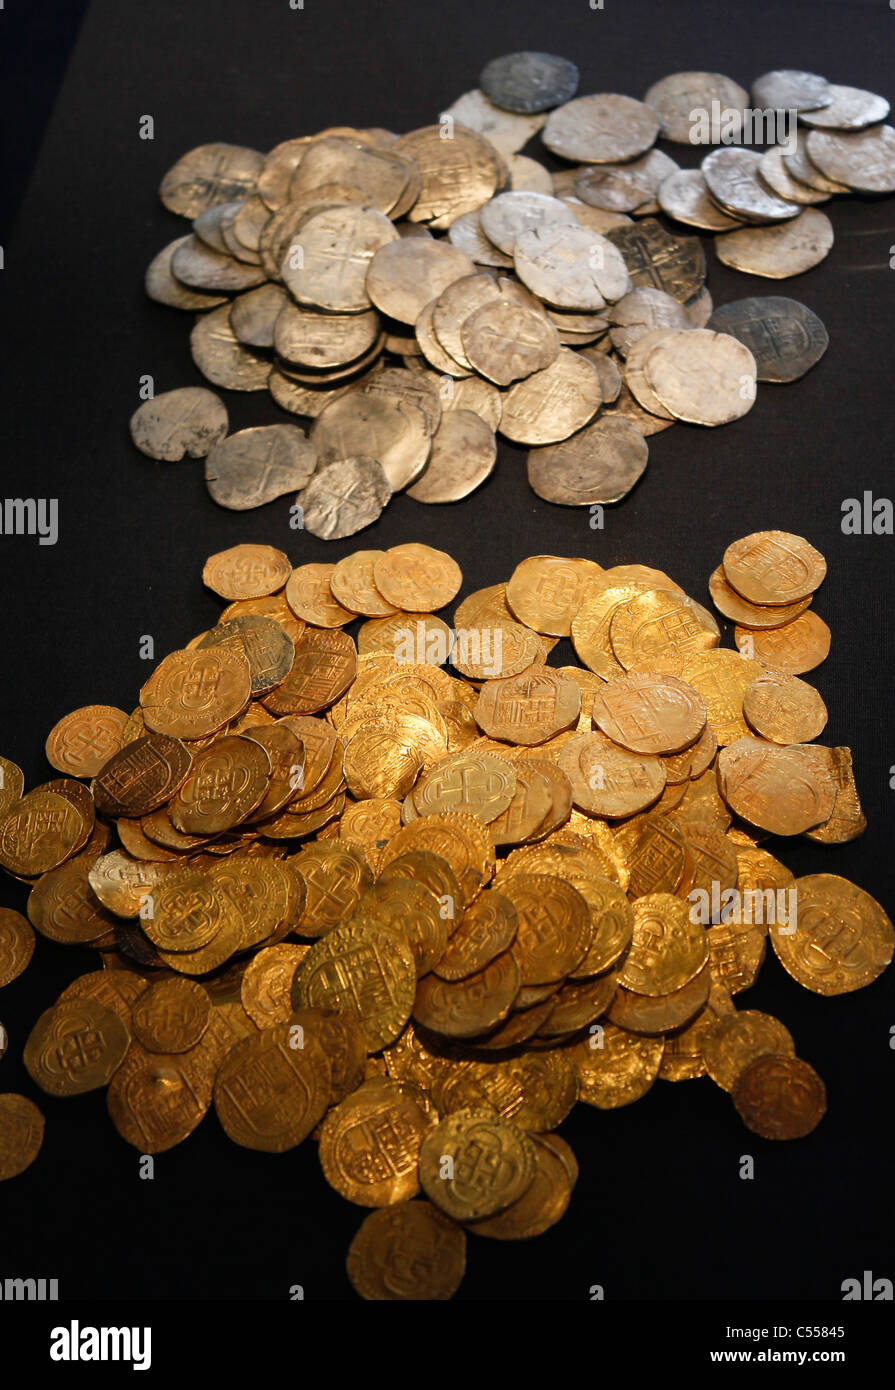 Gold- und Silbermünzen aus dem Wrack der spanischen Armada Galeone La Girona, heute im Ulster Museum, Belfast, UK Stockfoto